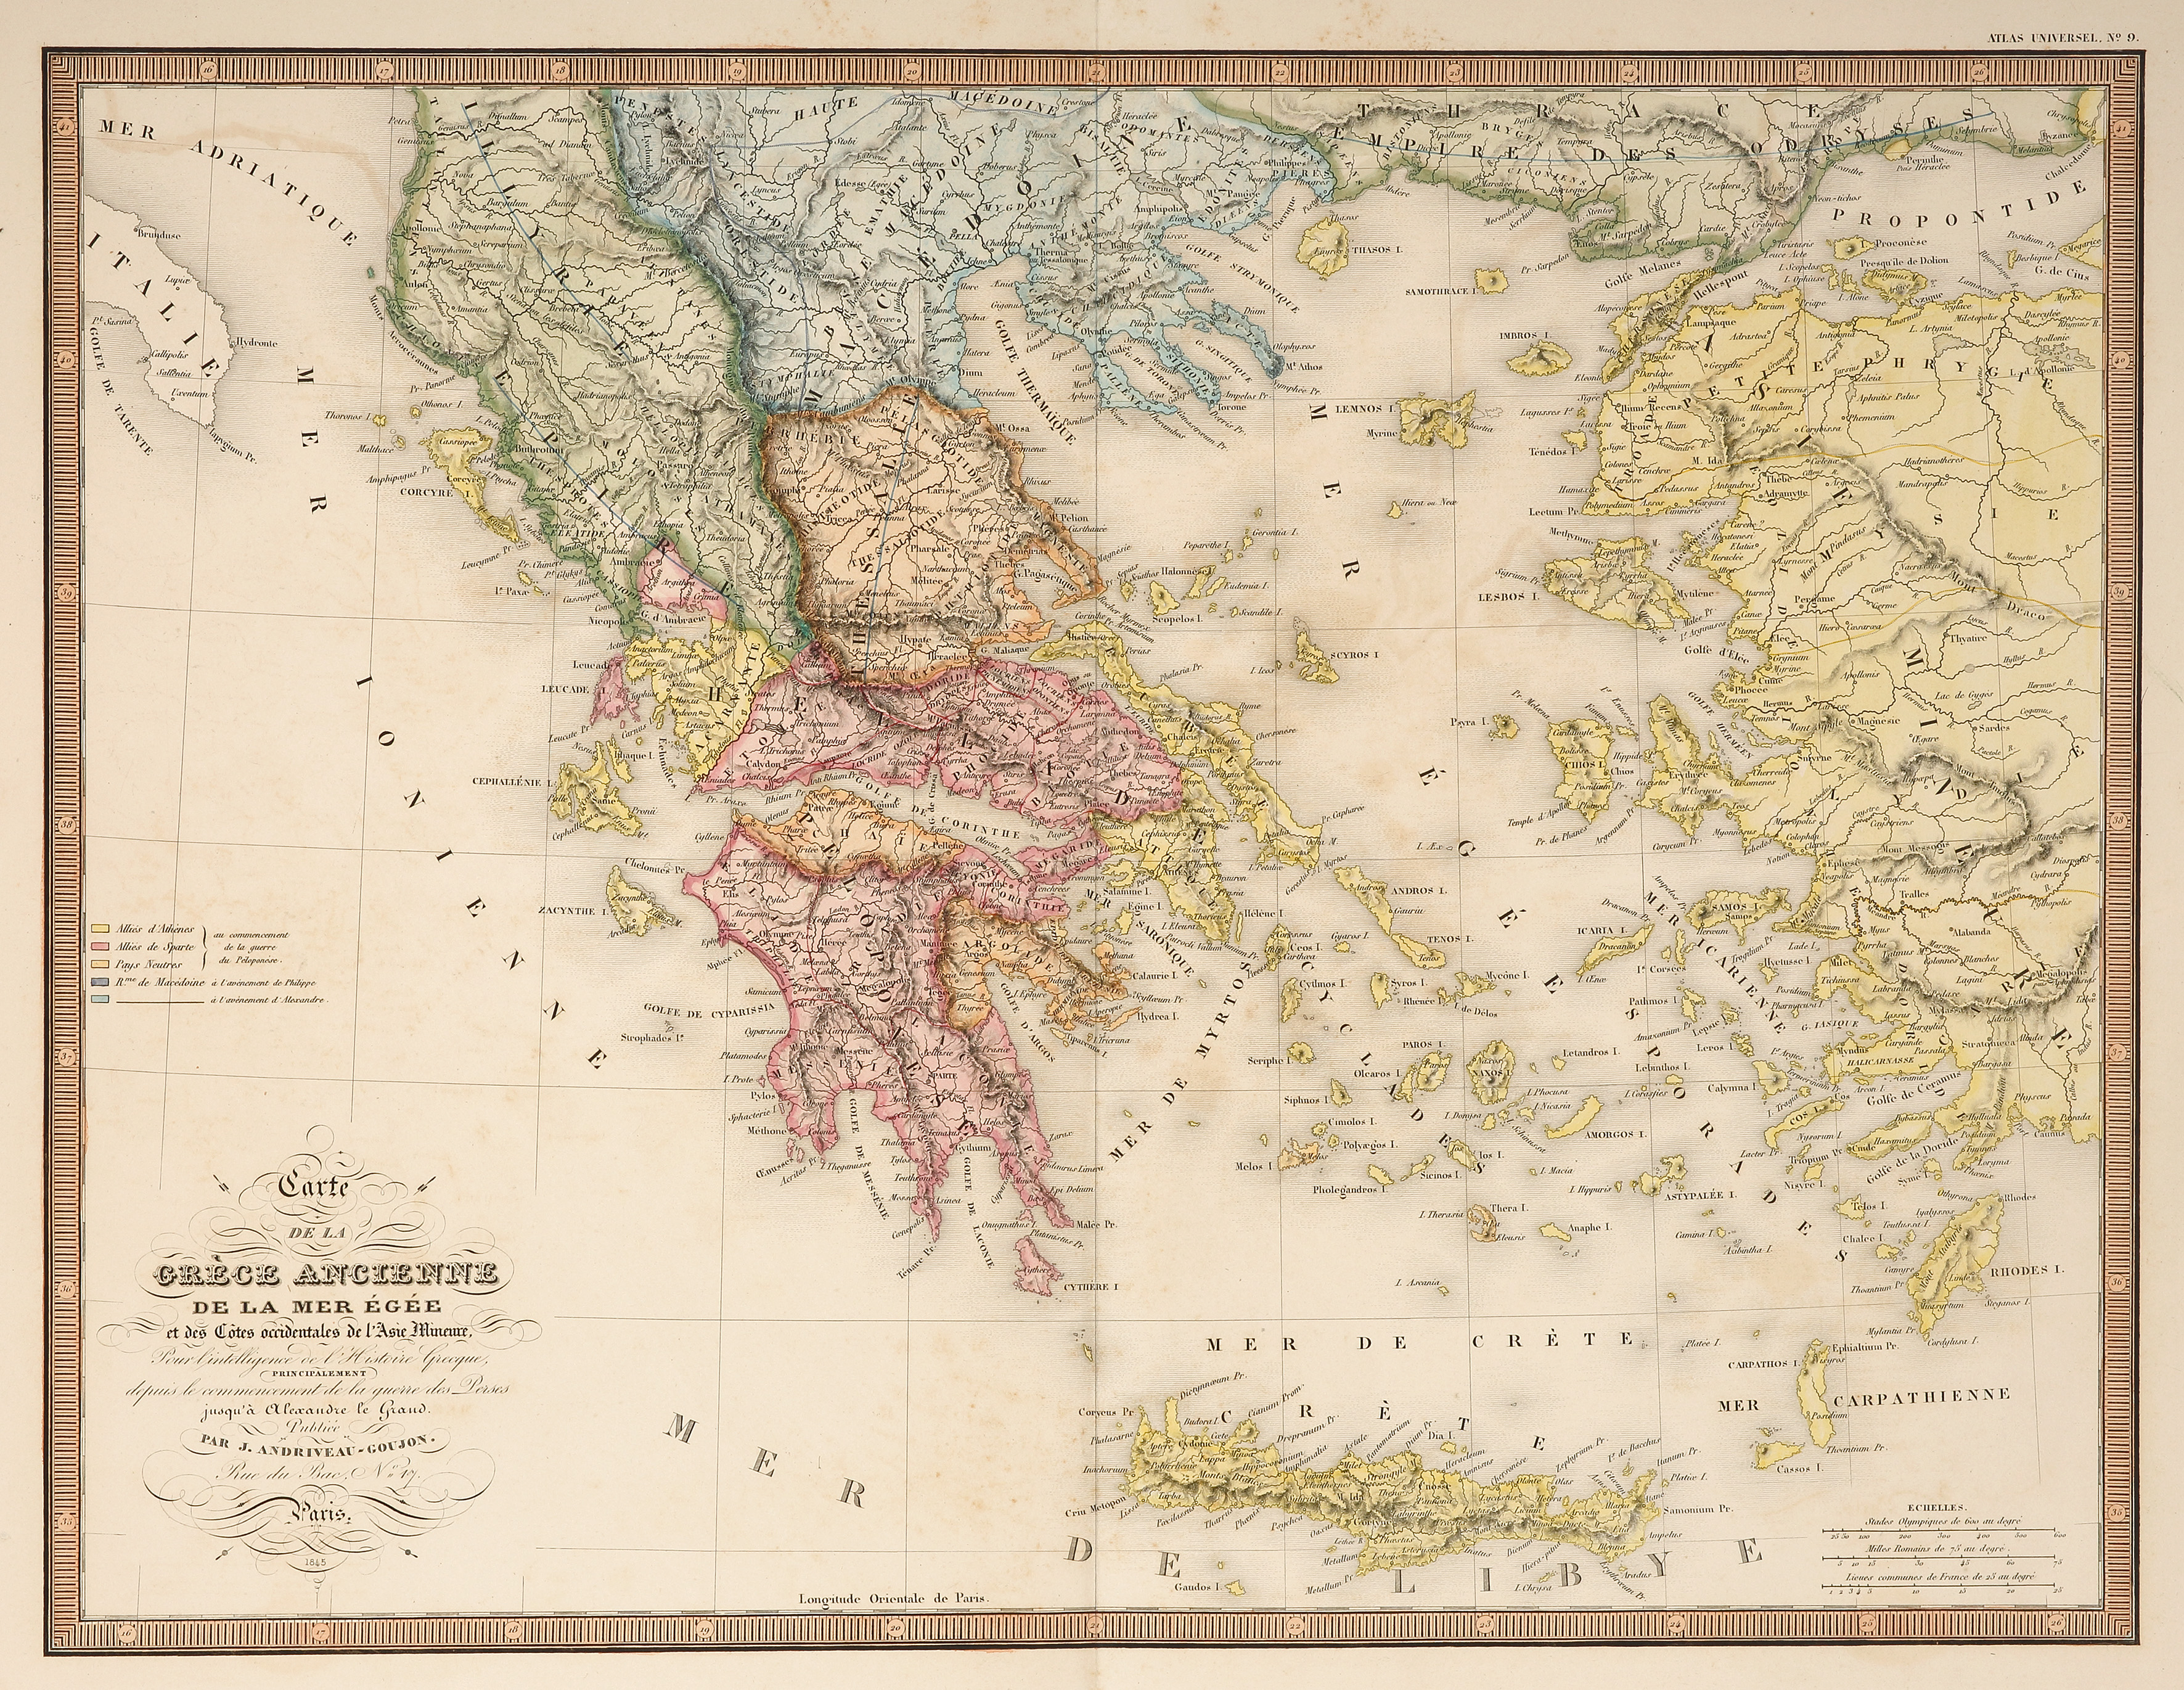 Carte de L'Asie Ancienne de la Grece Ancienne de la Mer Egee .....[Greece] - Antique Print from 1847